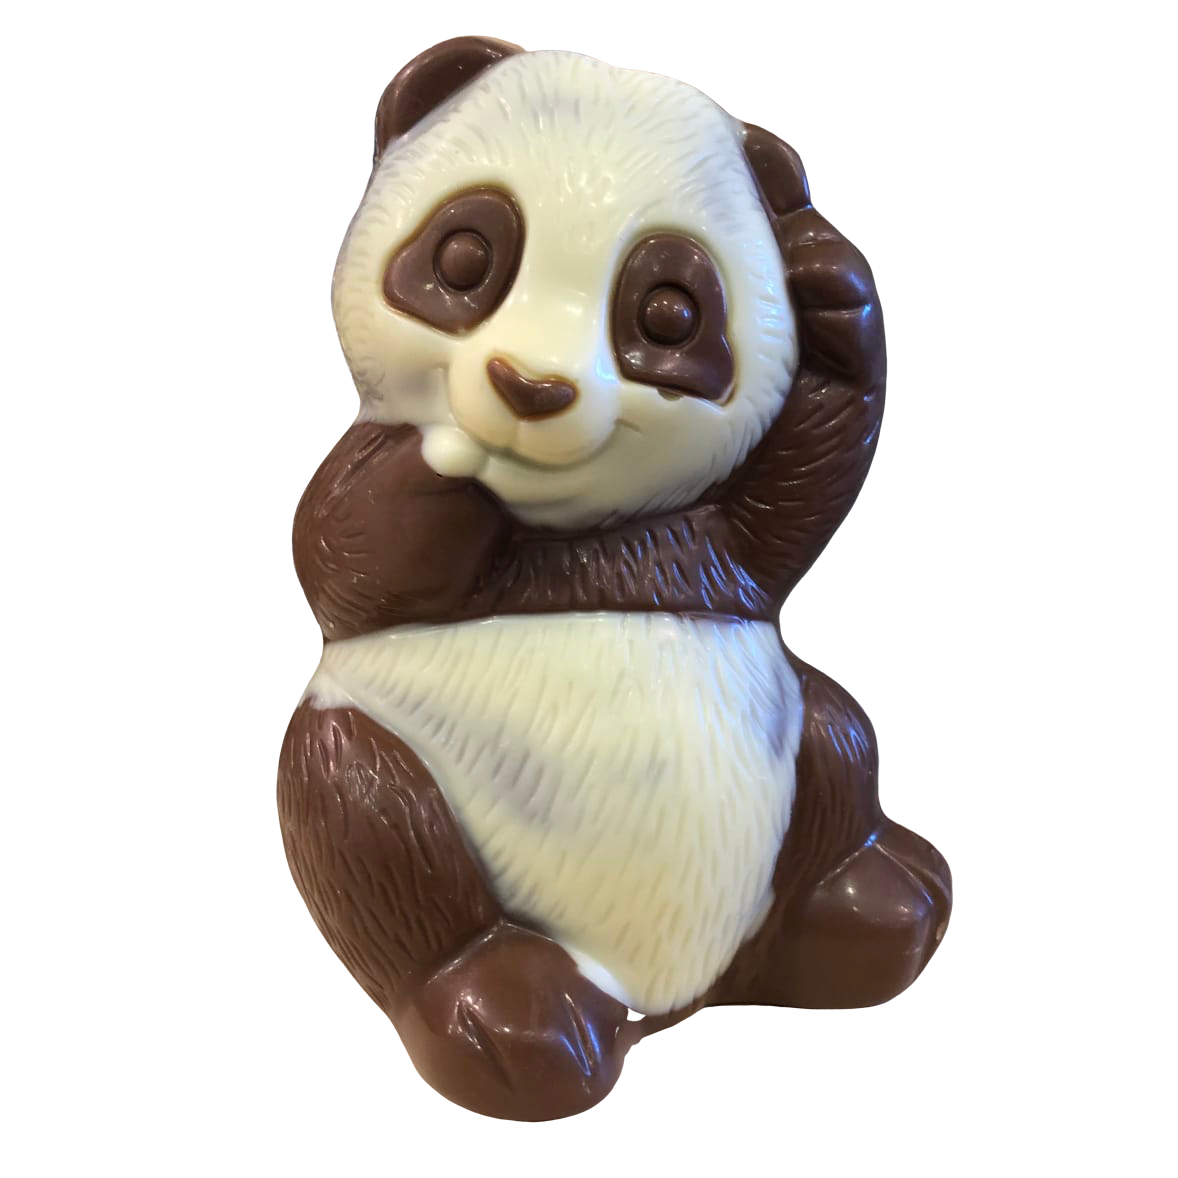 Moulage de Pâques Panda chocolat au lait - Confiserie des Arcades